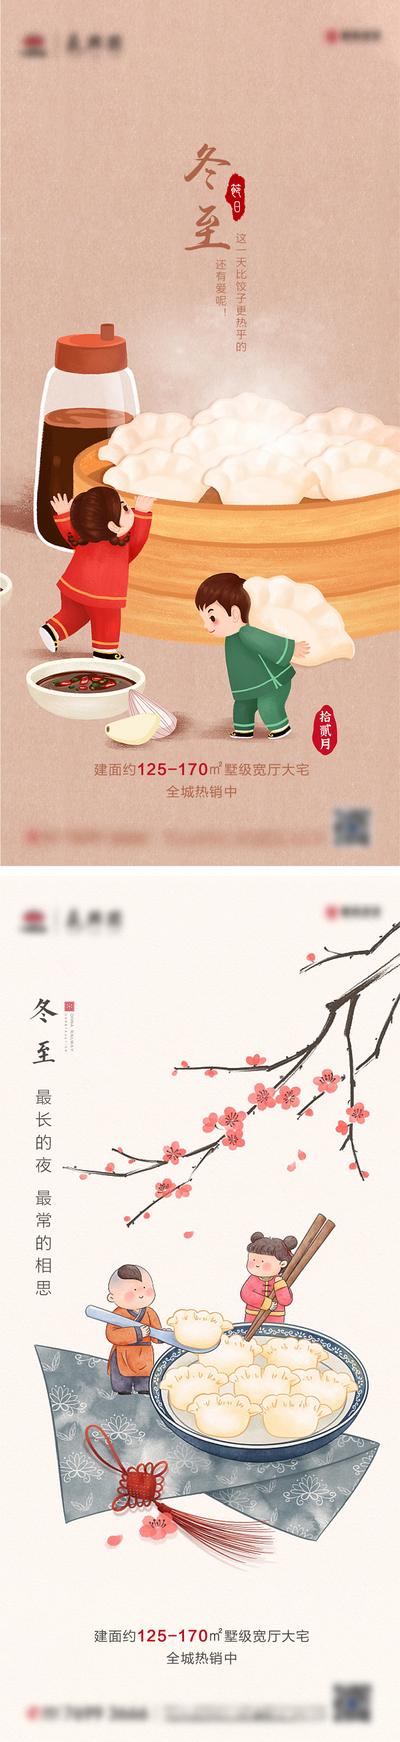 南门网 海报 房地产 二十四节气 冬至 饺子 插画 中国结